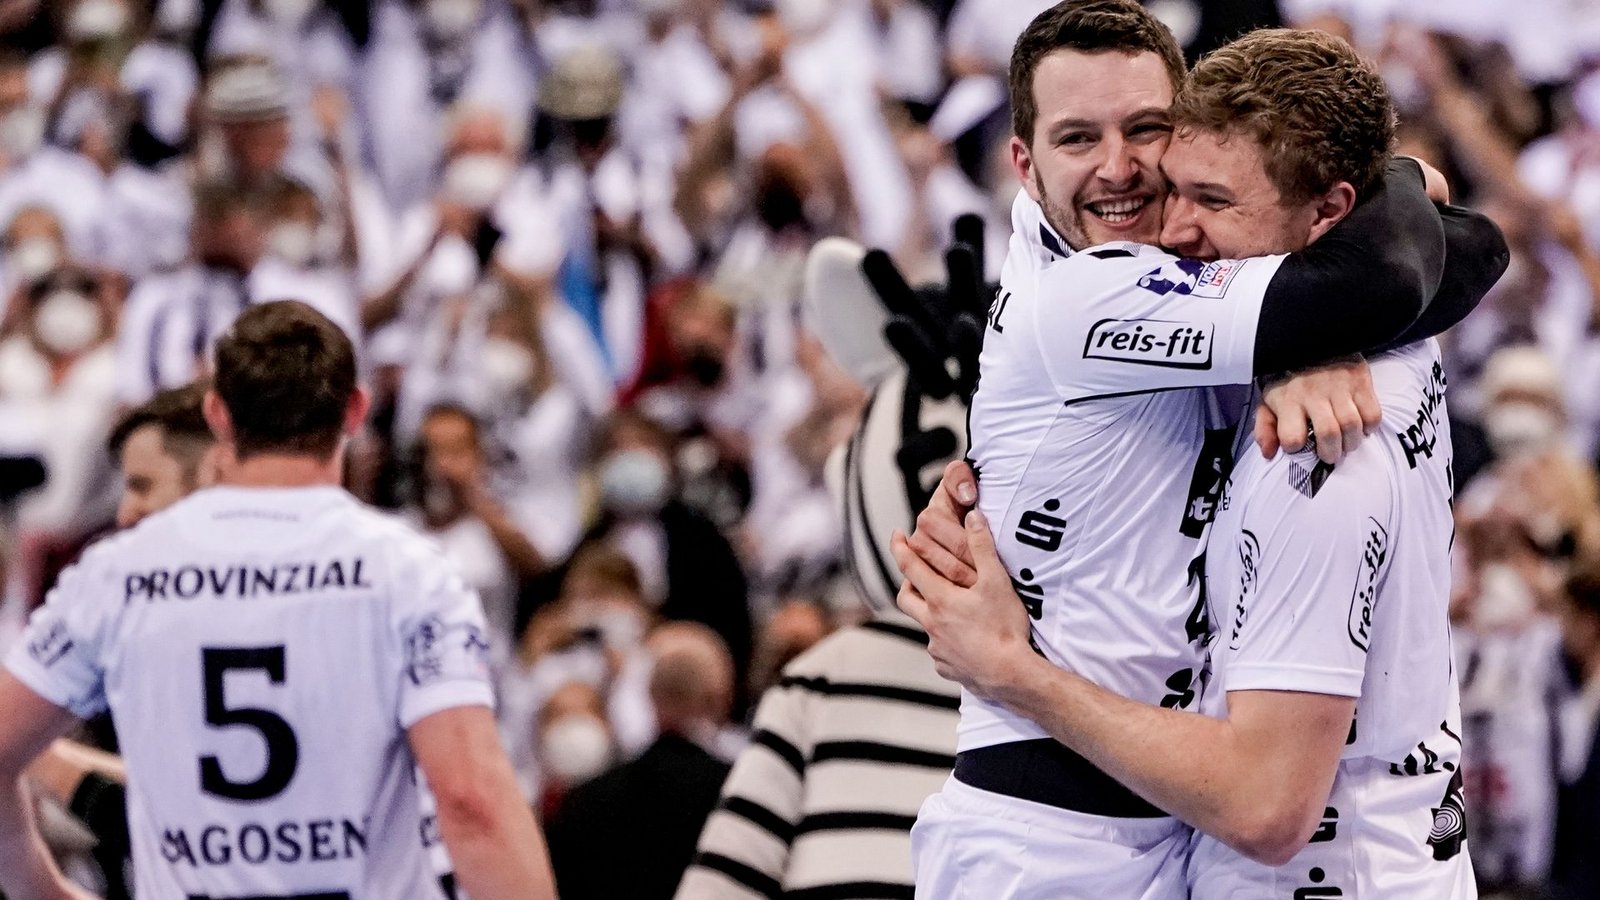 Magnus Landin (r) und Miha Zarabec feiern den Pokal-Sieg des THW Kiel.Foto: Axel Heimken/dpa